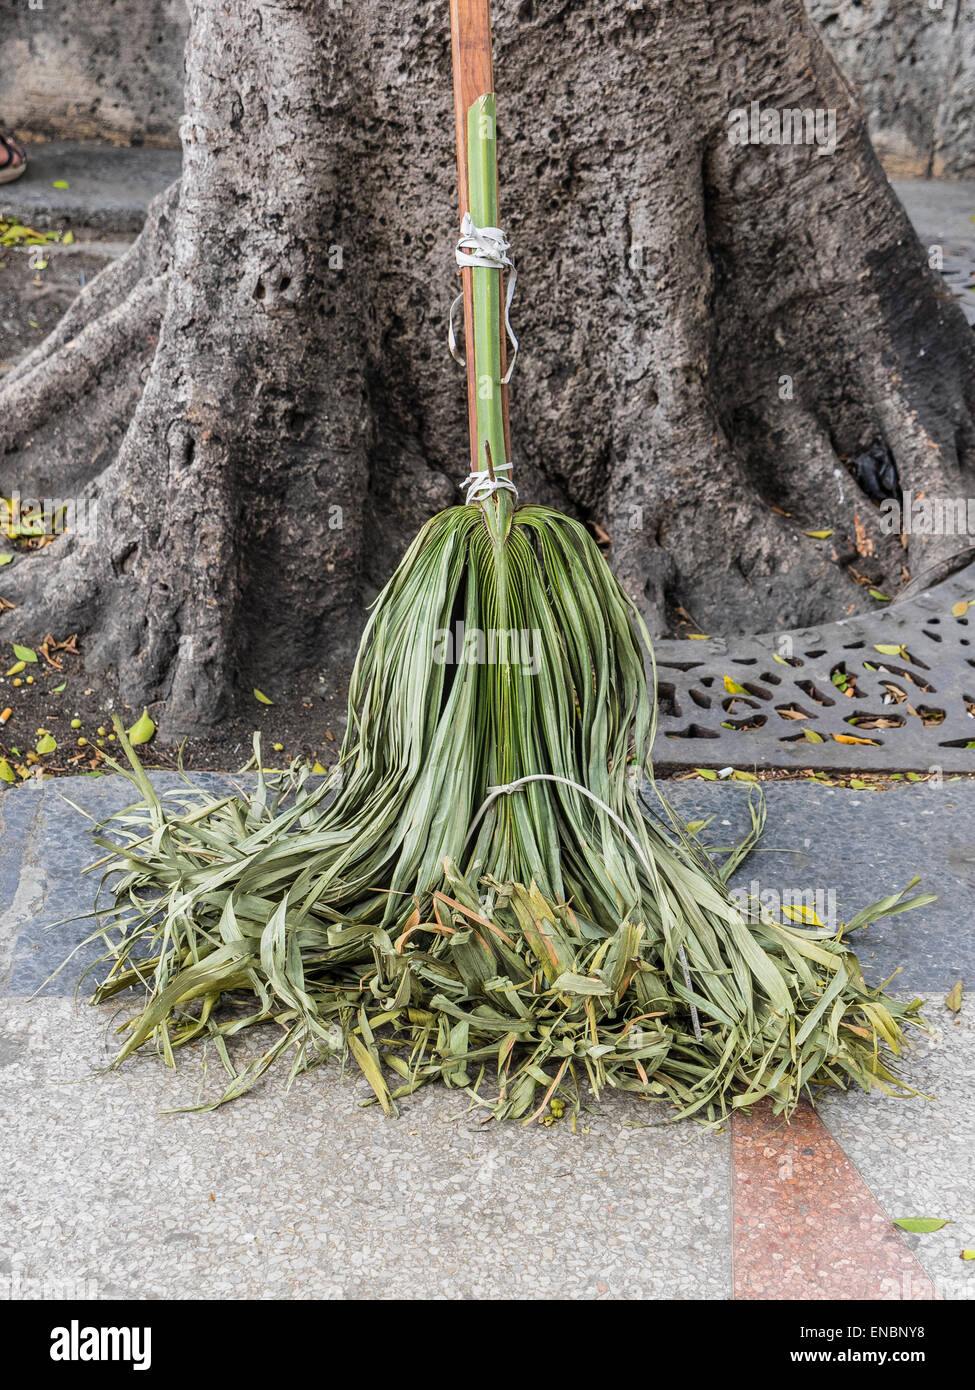 Un balai vert faites de feuilles de palmiers qui est lié à un balai  s'appuie contre un arbre sur un trottoir à La Havane, Cuba Photo Stock -  Alamy